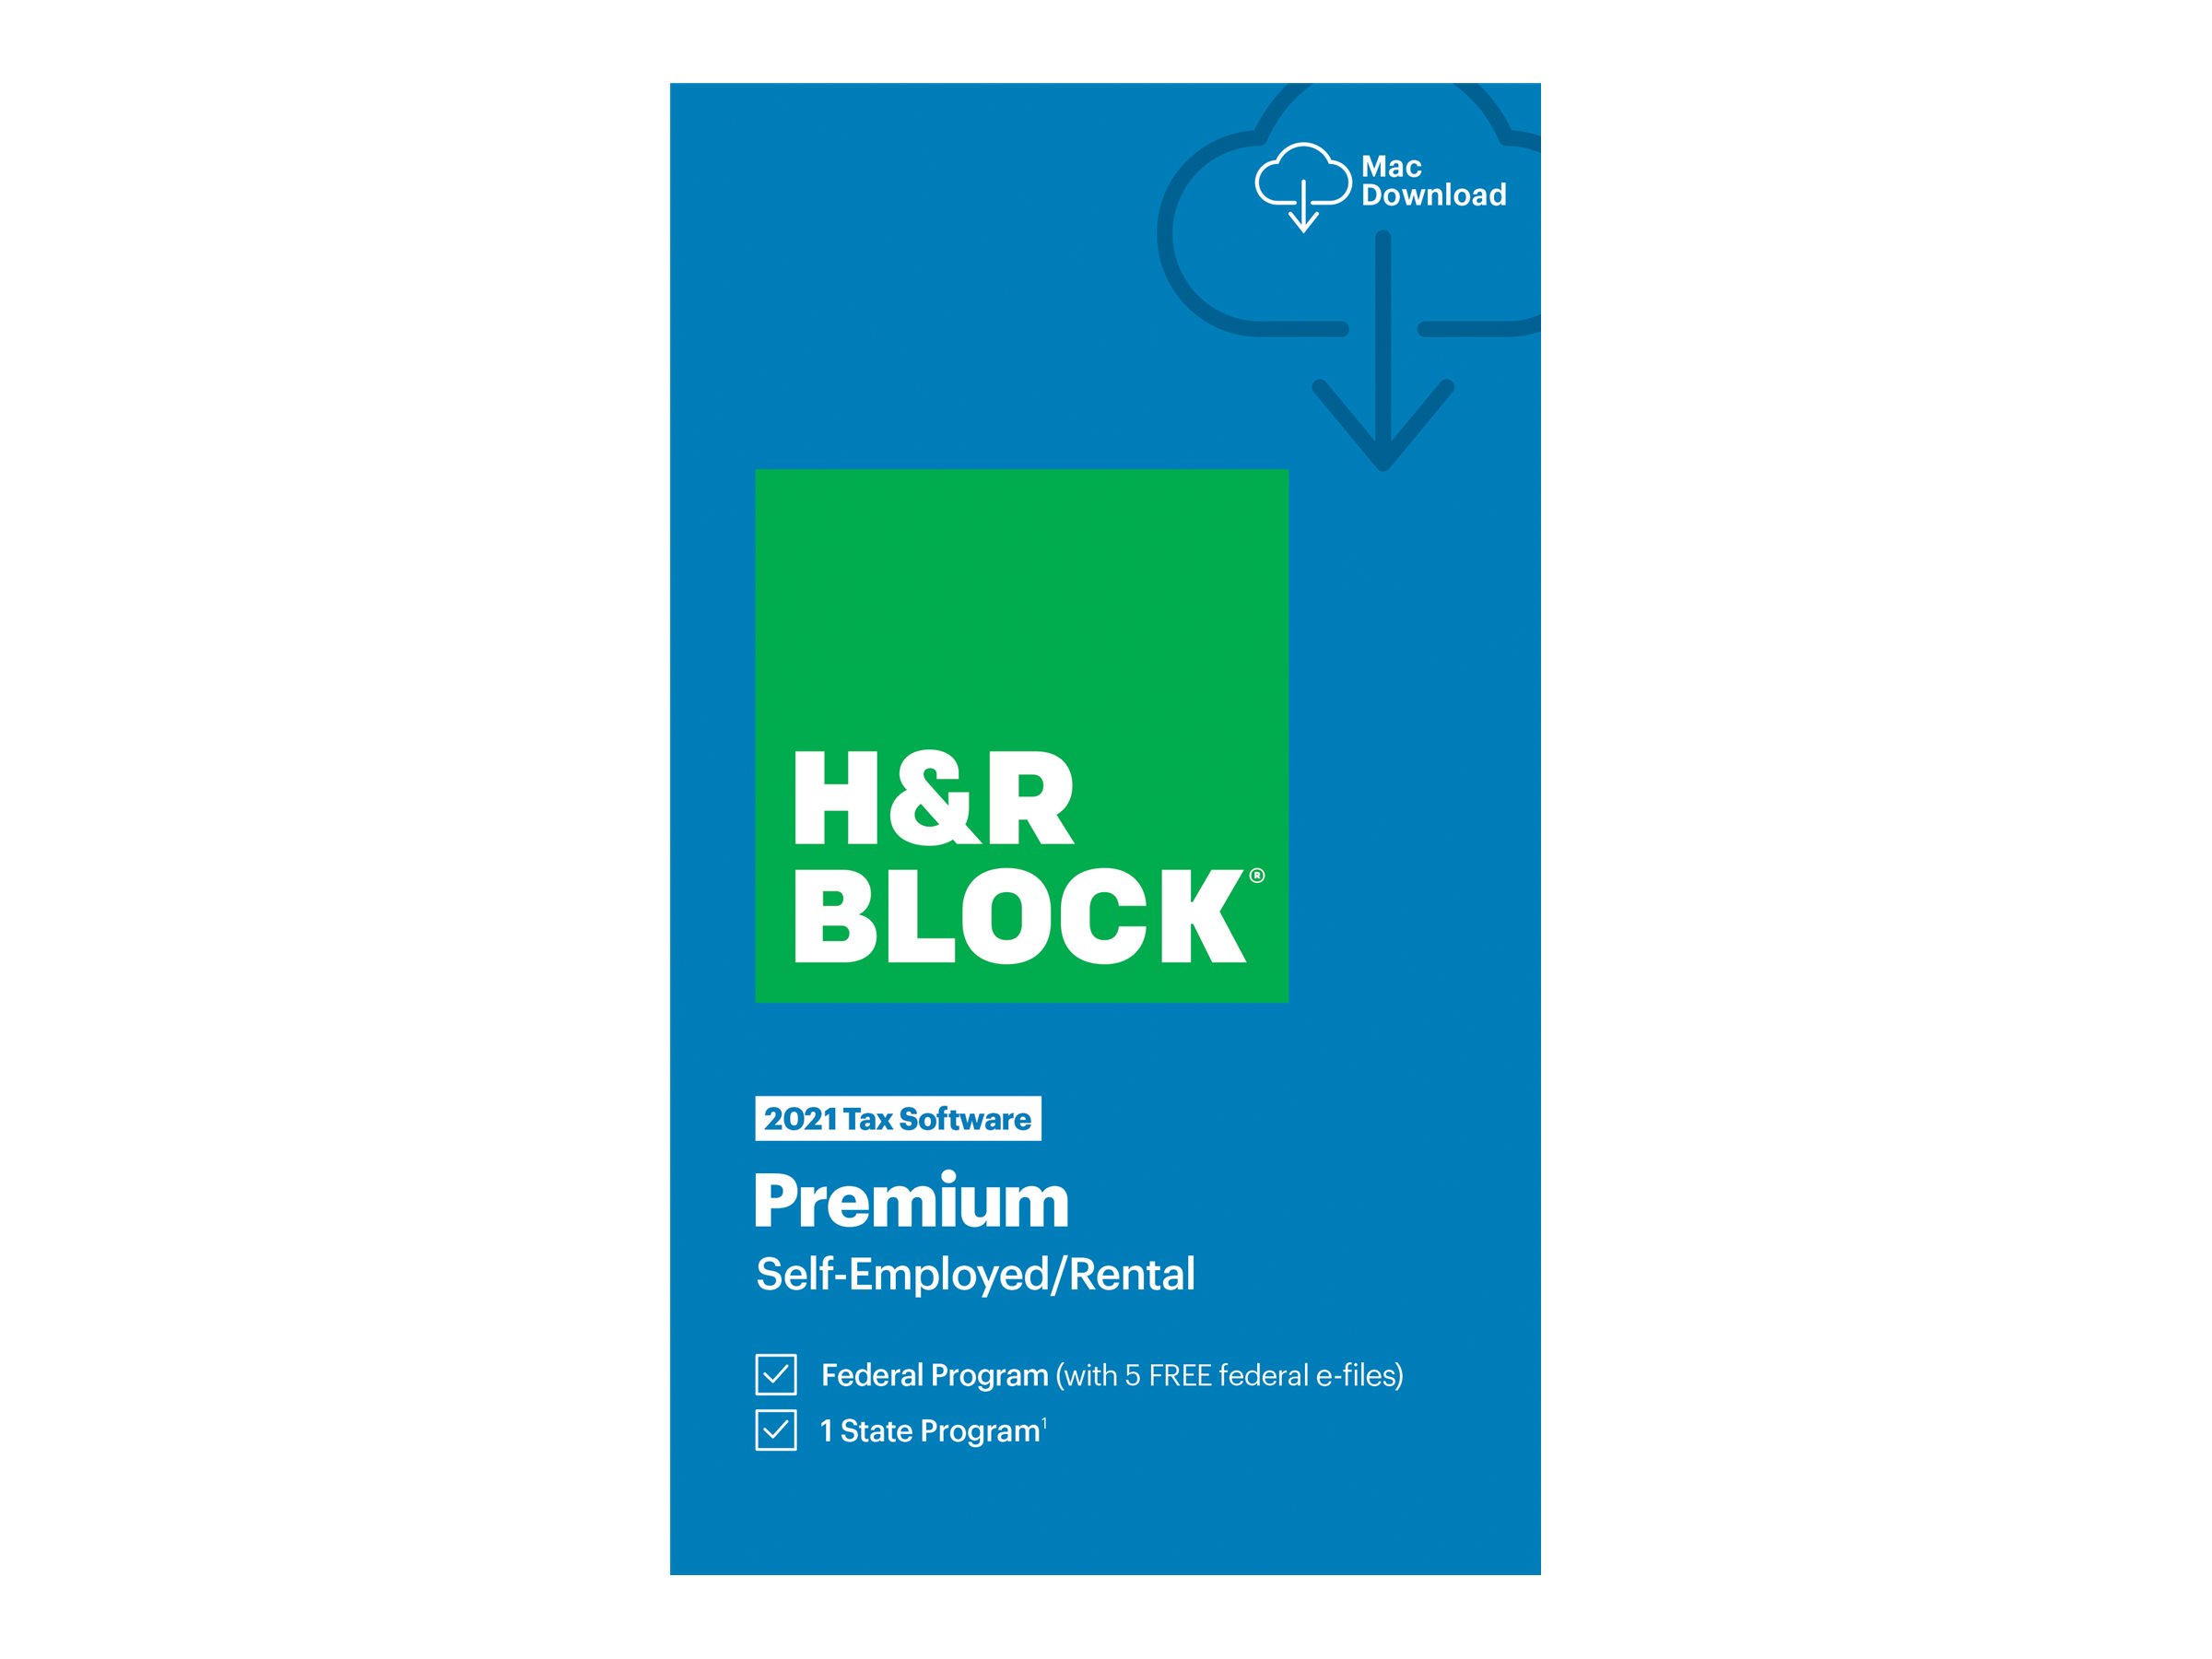 H&R Block Premium 2021